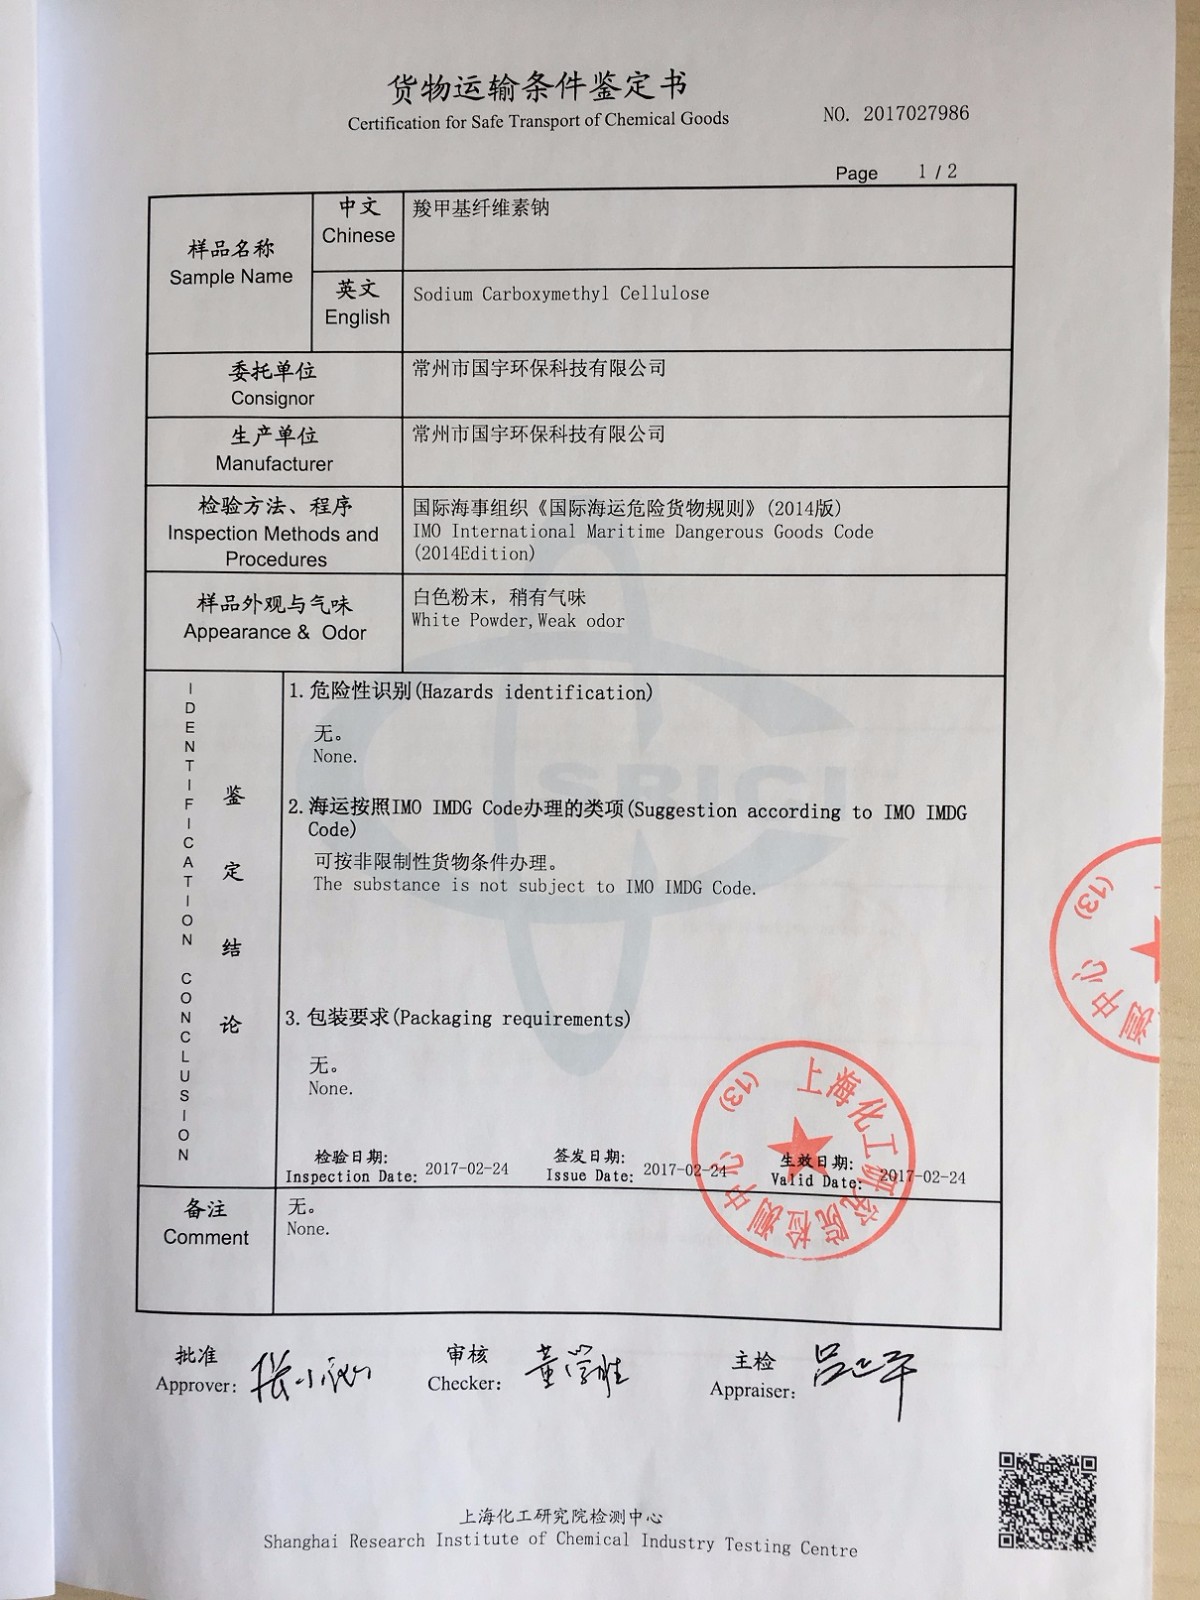 2017年上海化工研究院检测中心货物运输条件鉴定书(海运和空运)